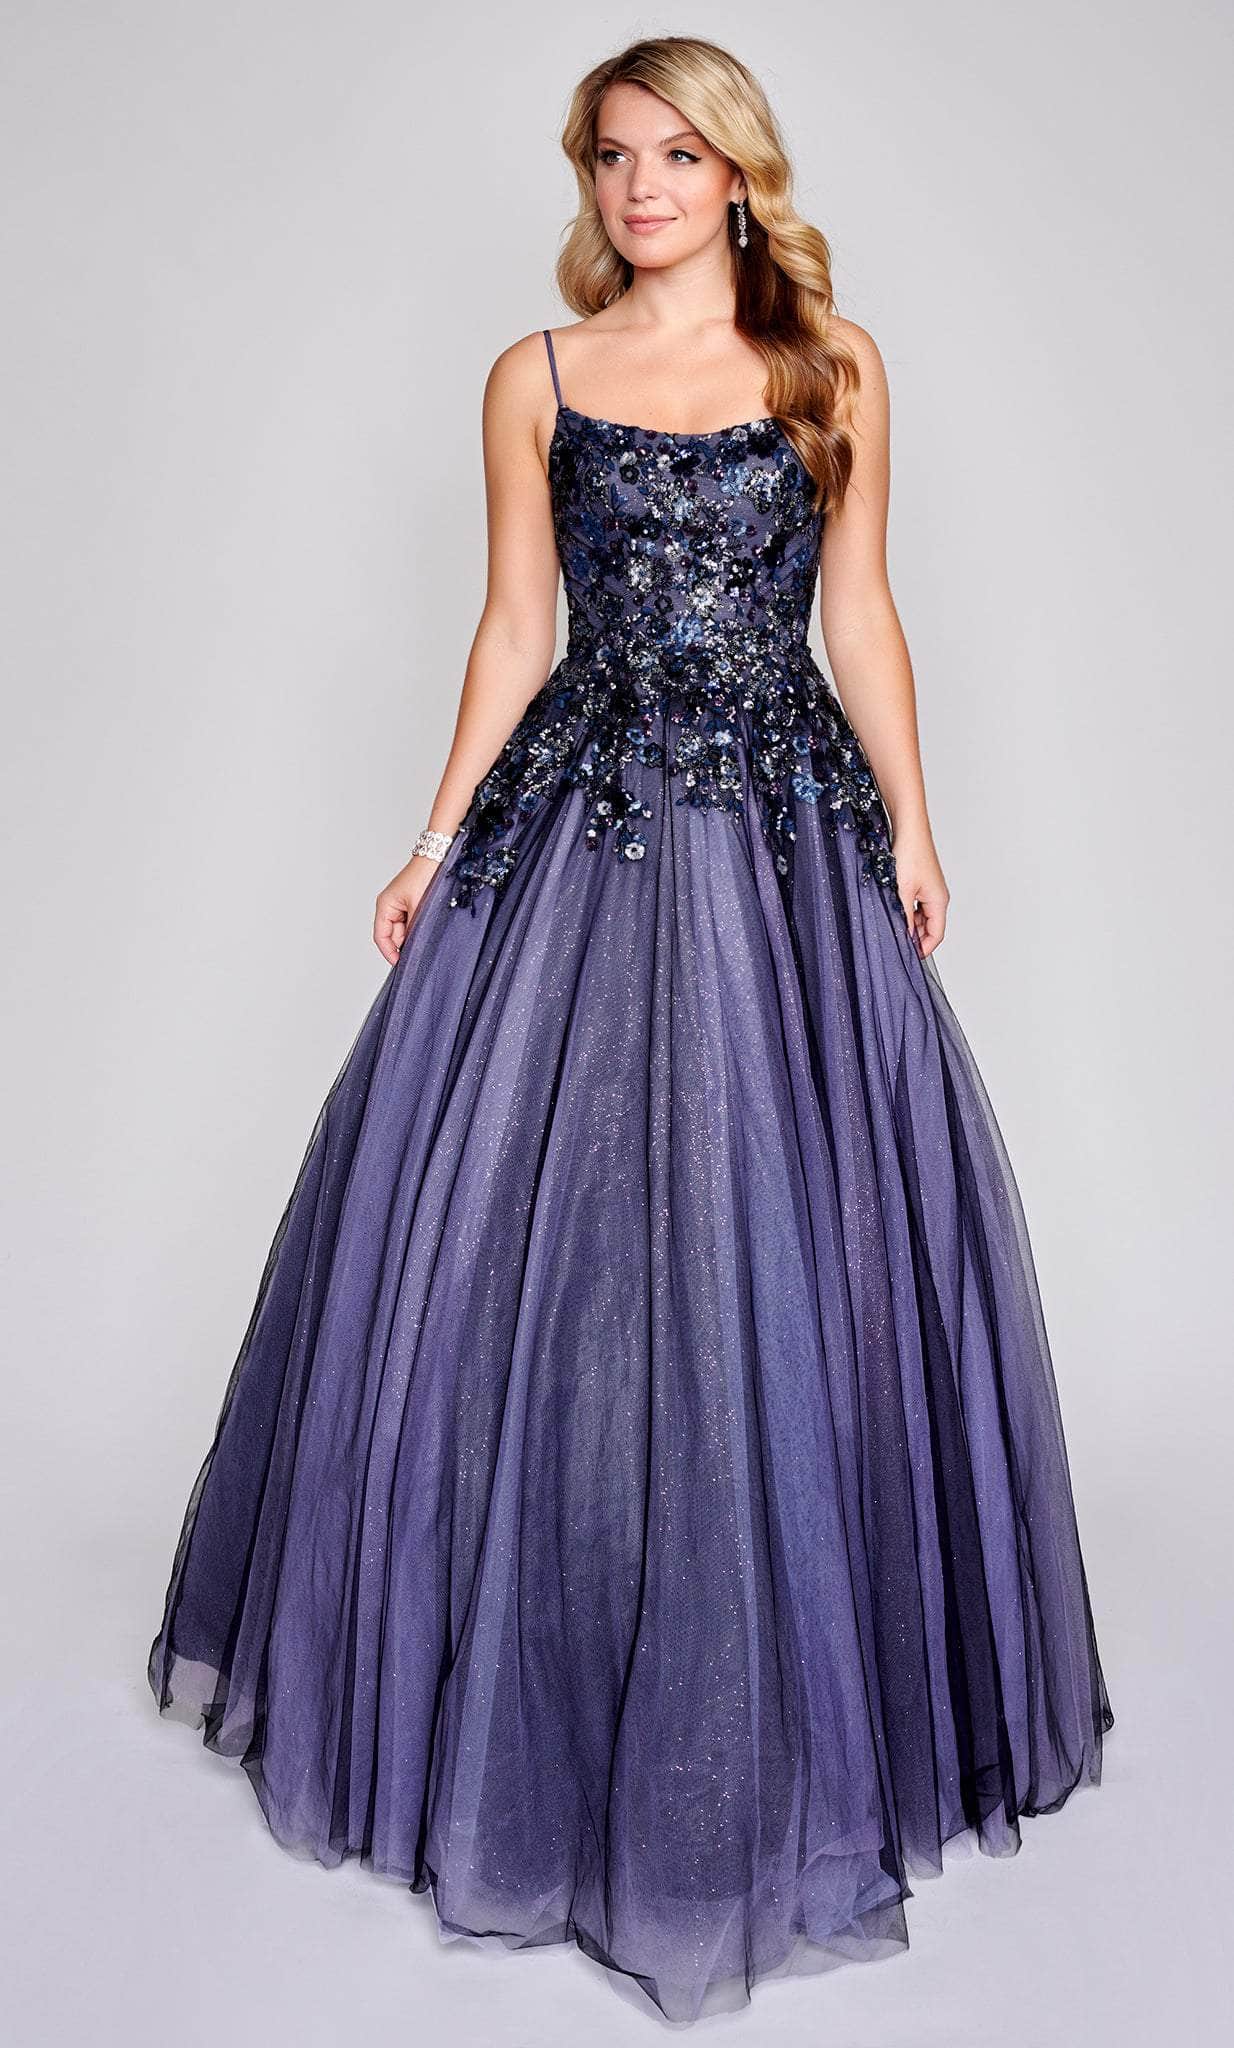 Image of Nina Canacci 3206 - Floral Embellished Sleeveless Prom Dress